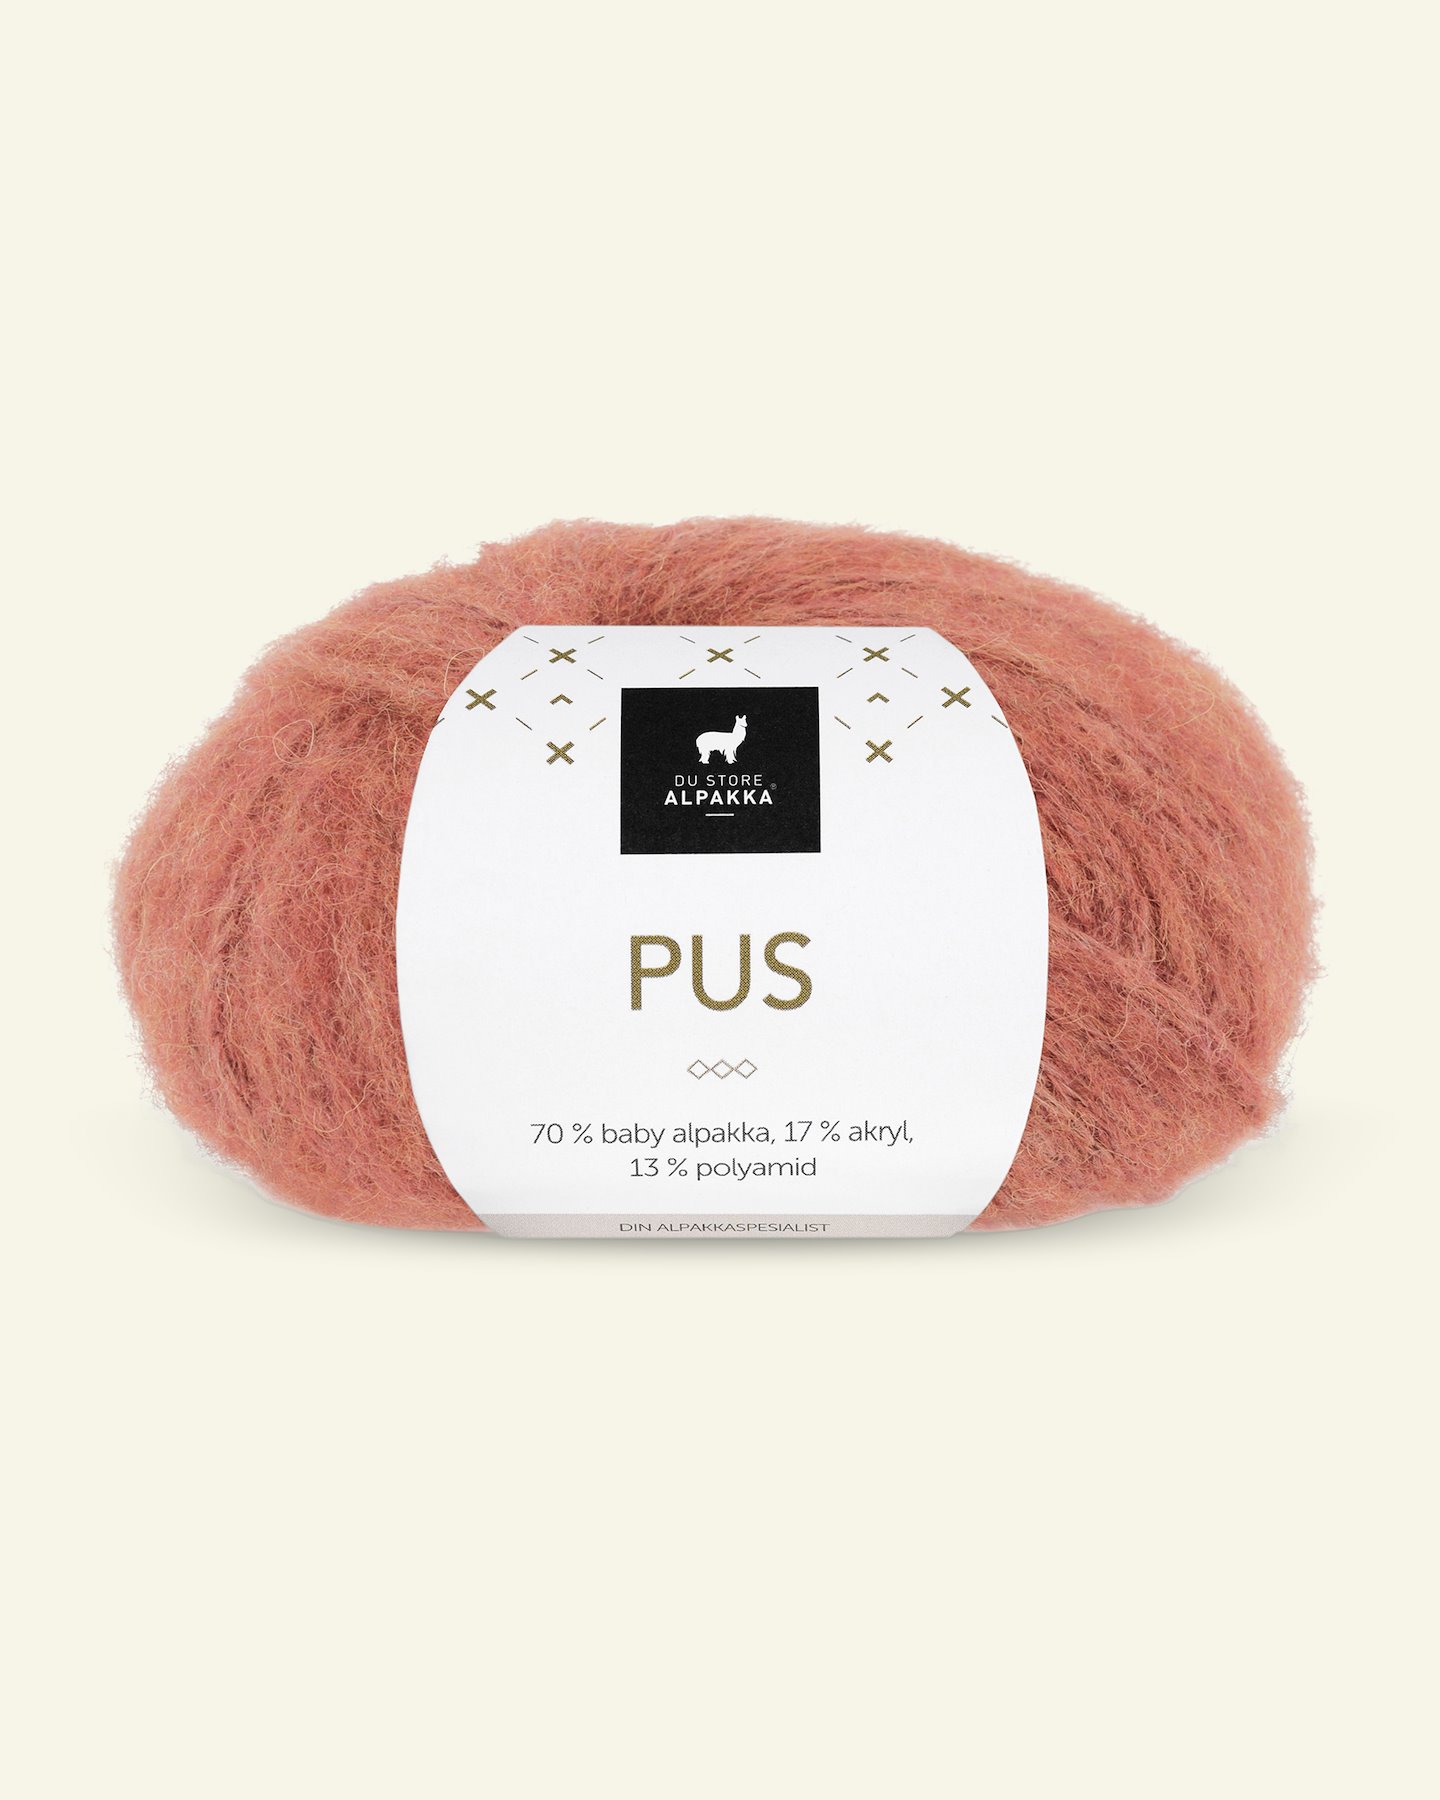 Du Store Alpakka, alpaca mixed yarn "Pus", warm orange (4034) 90000727_pack